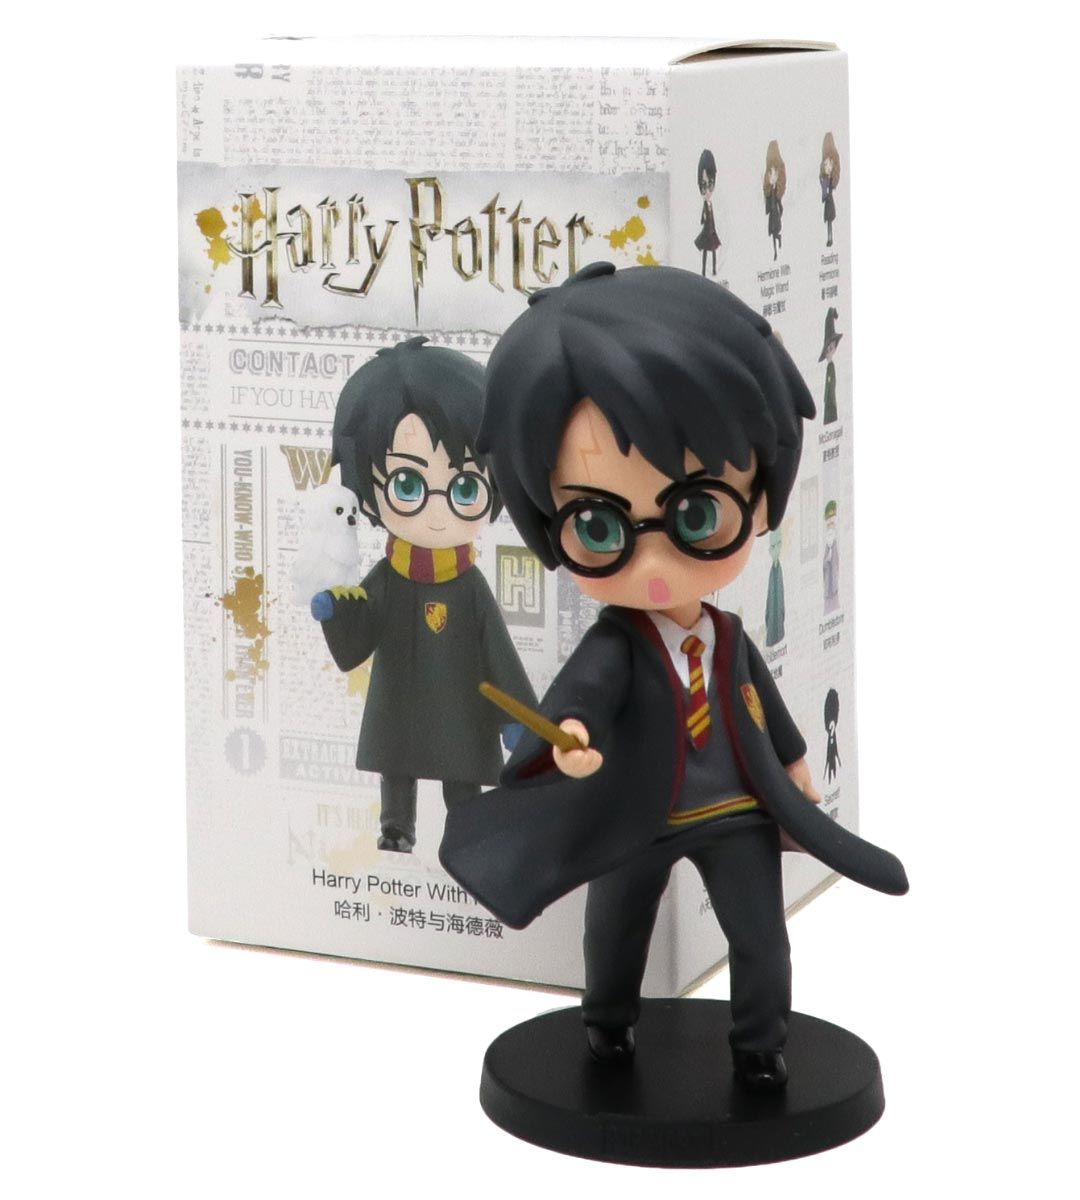 Harry Potter by Popmart